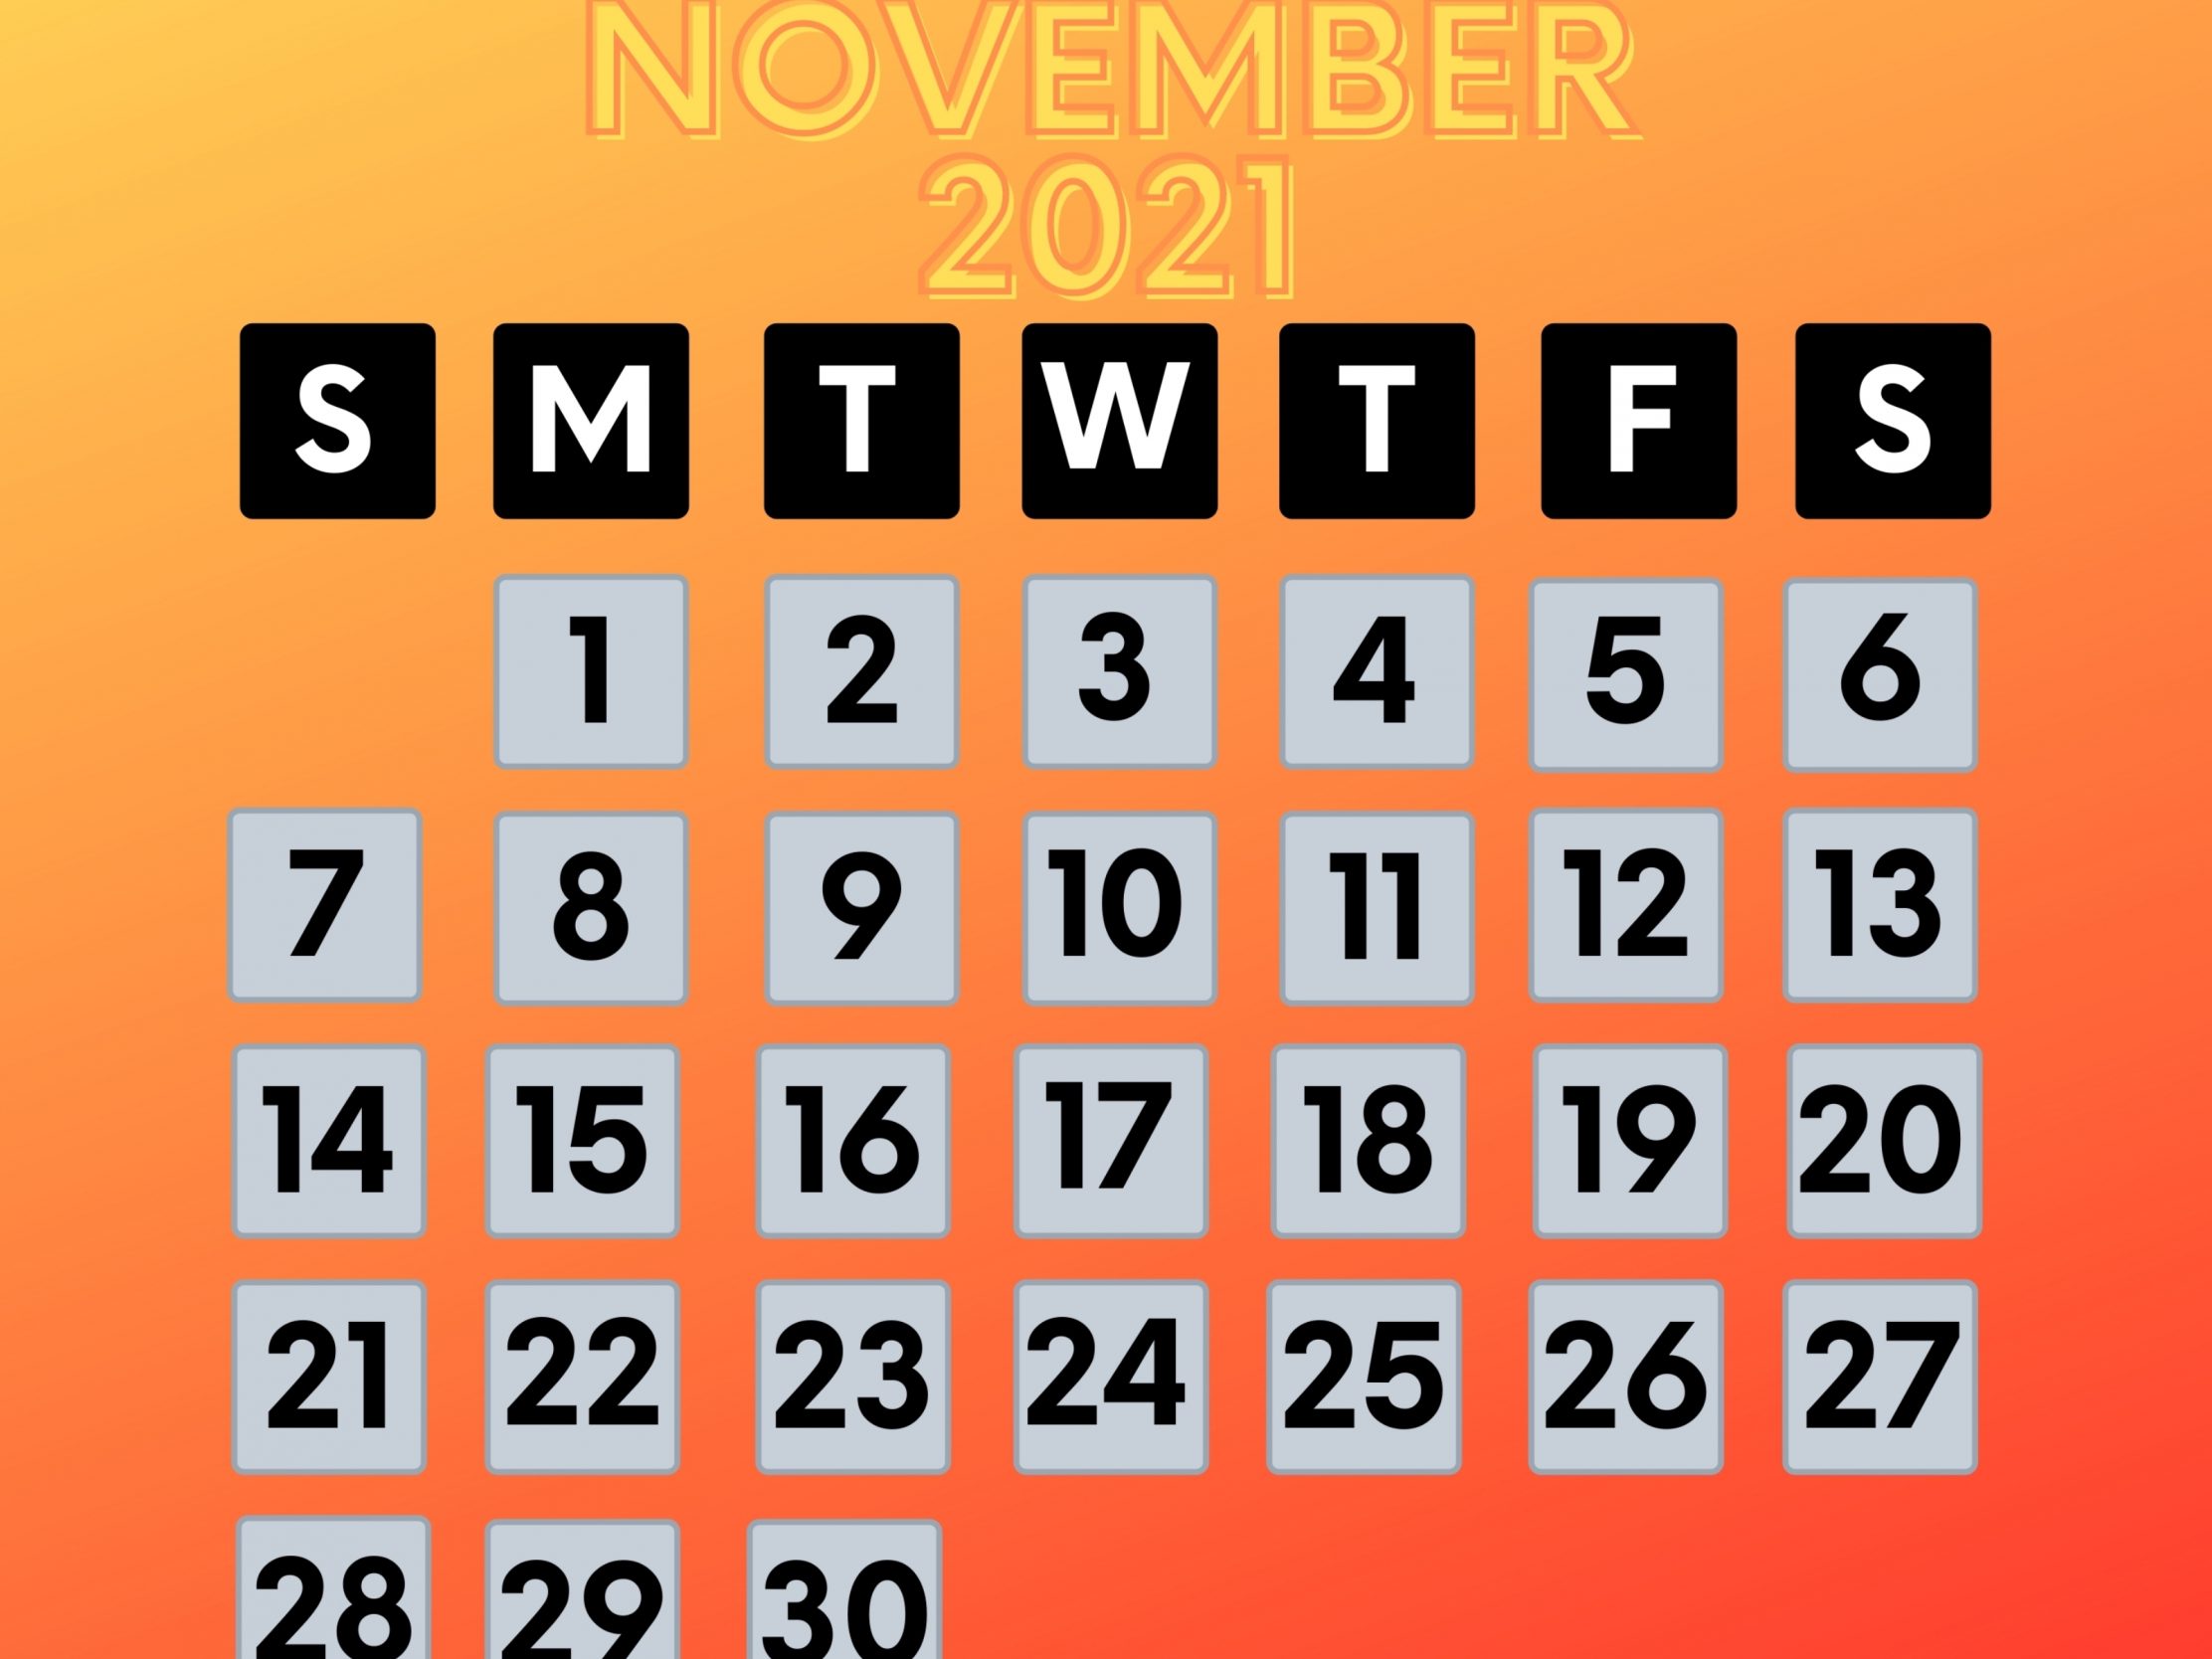 2224x1668 iPad Pro wallpapers November 2021 Calendar iPad Wallpaper 2224x1668 pixels resolution